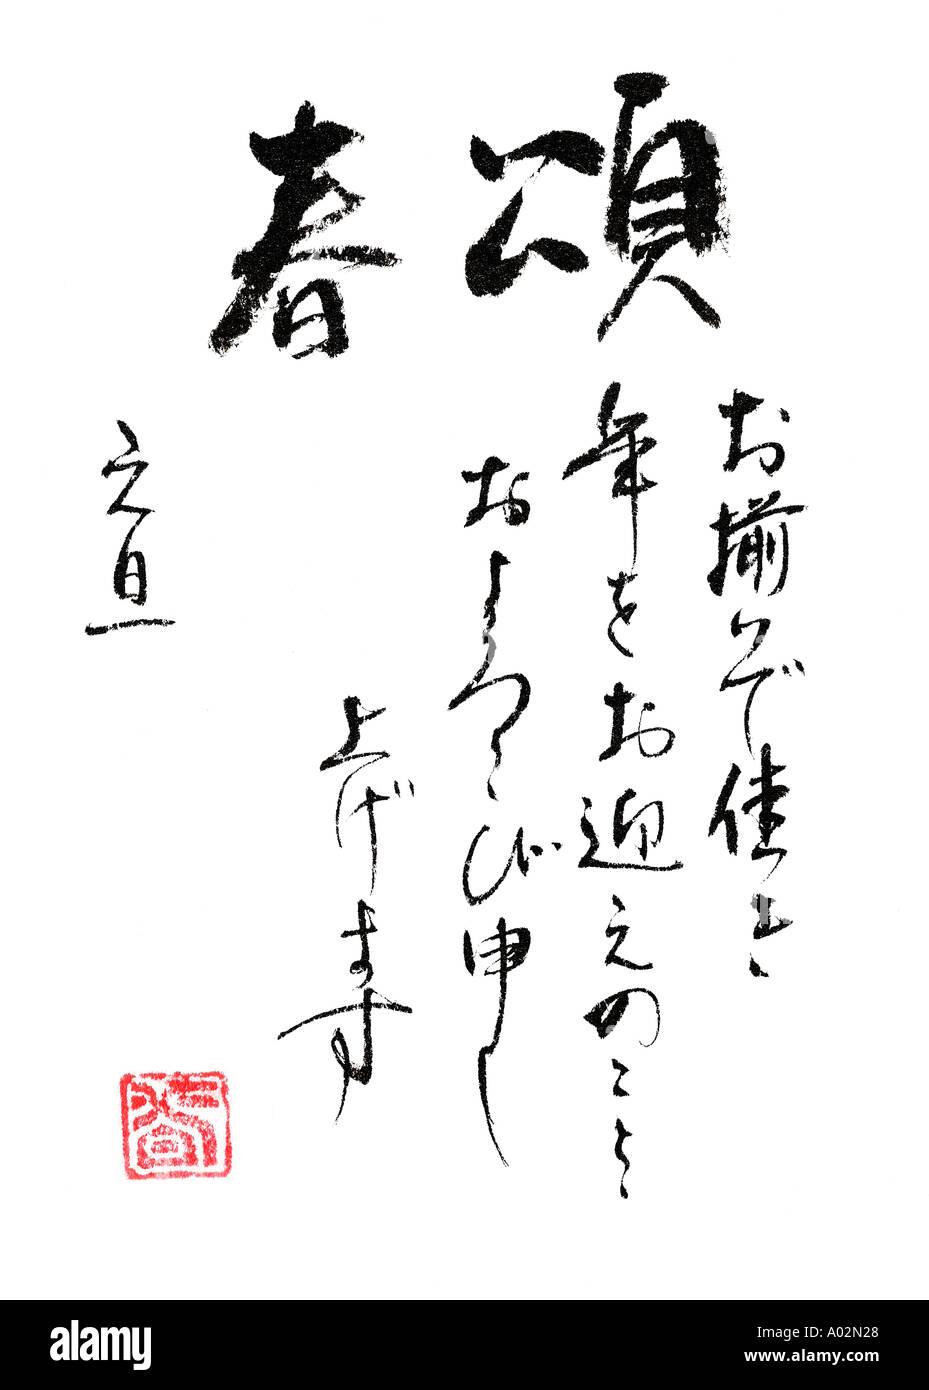 Salutation de célébration d'acquisition et de bonheur pour une Nouvelle Année pacifique sain par Naomi Saso Japon Calligraphie Banque D'Images